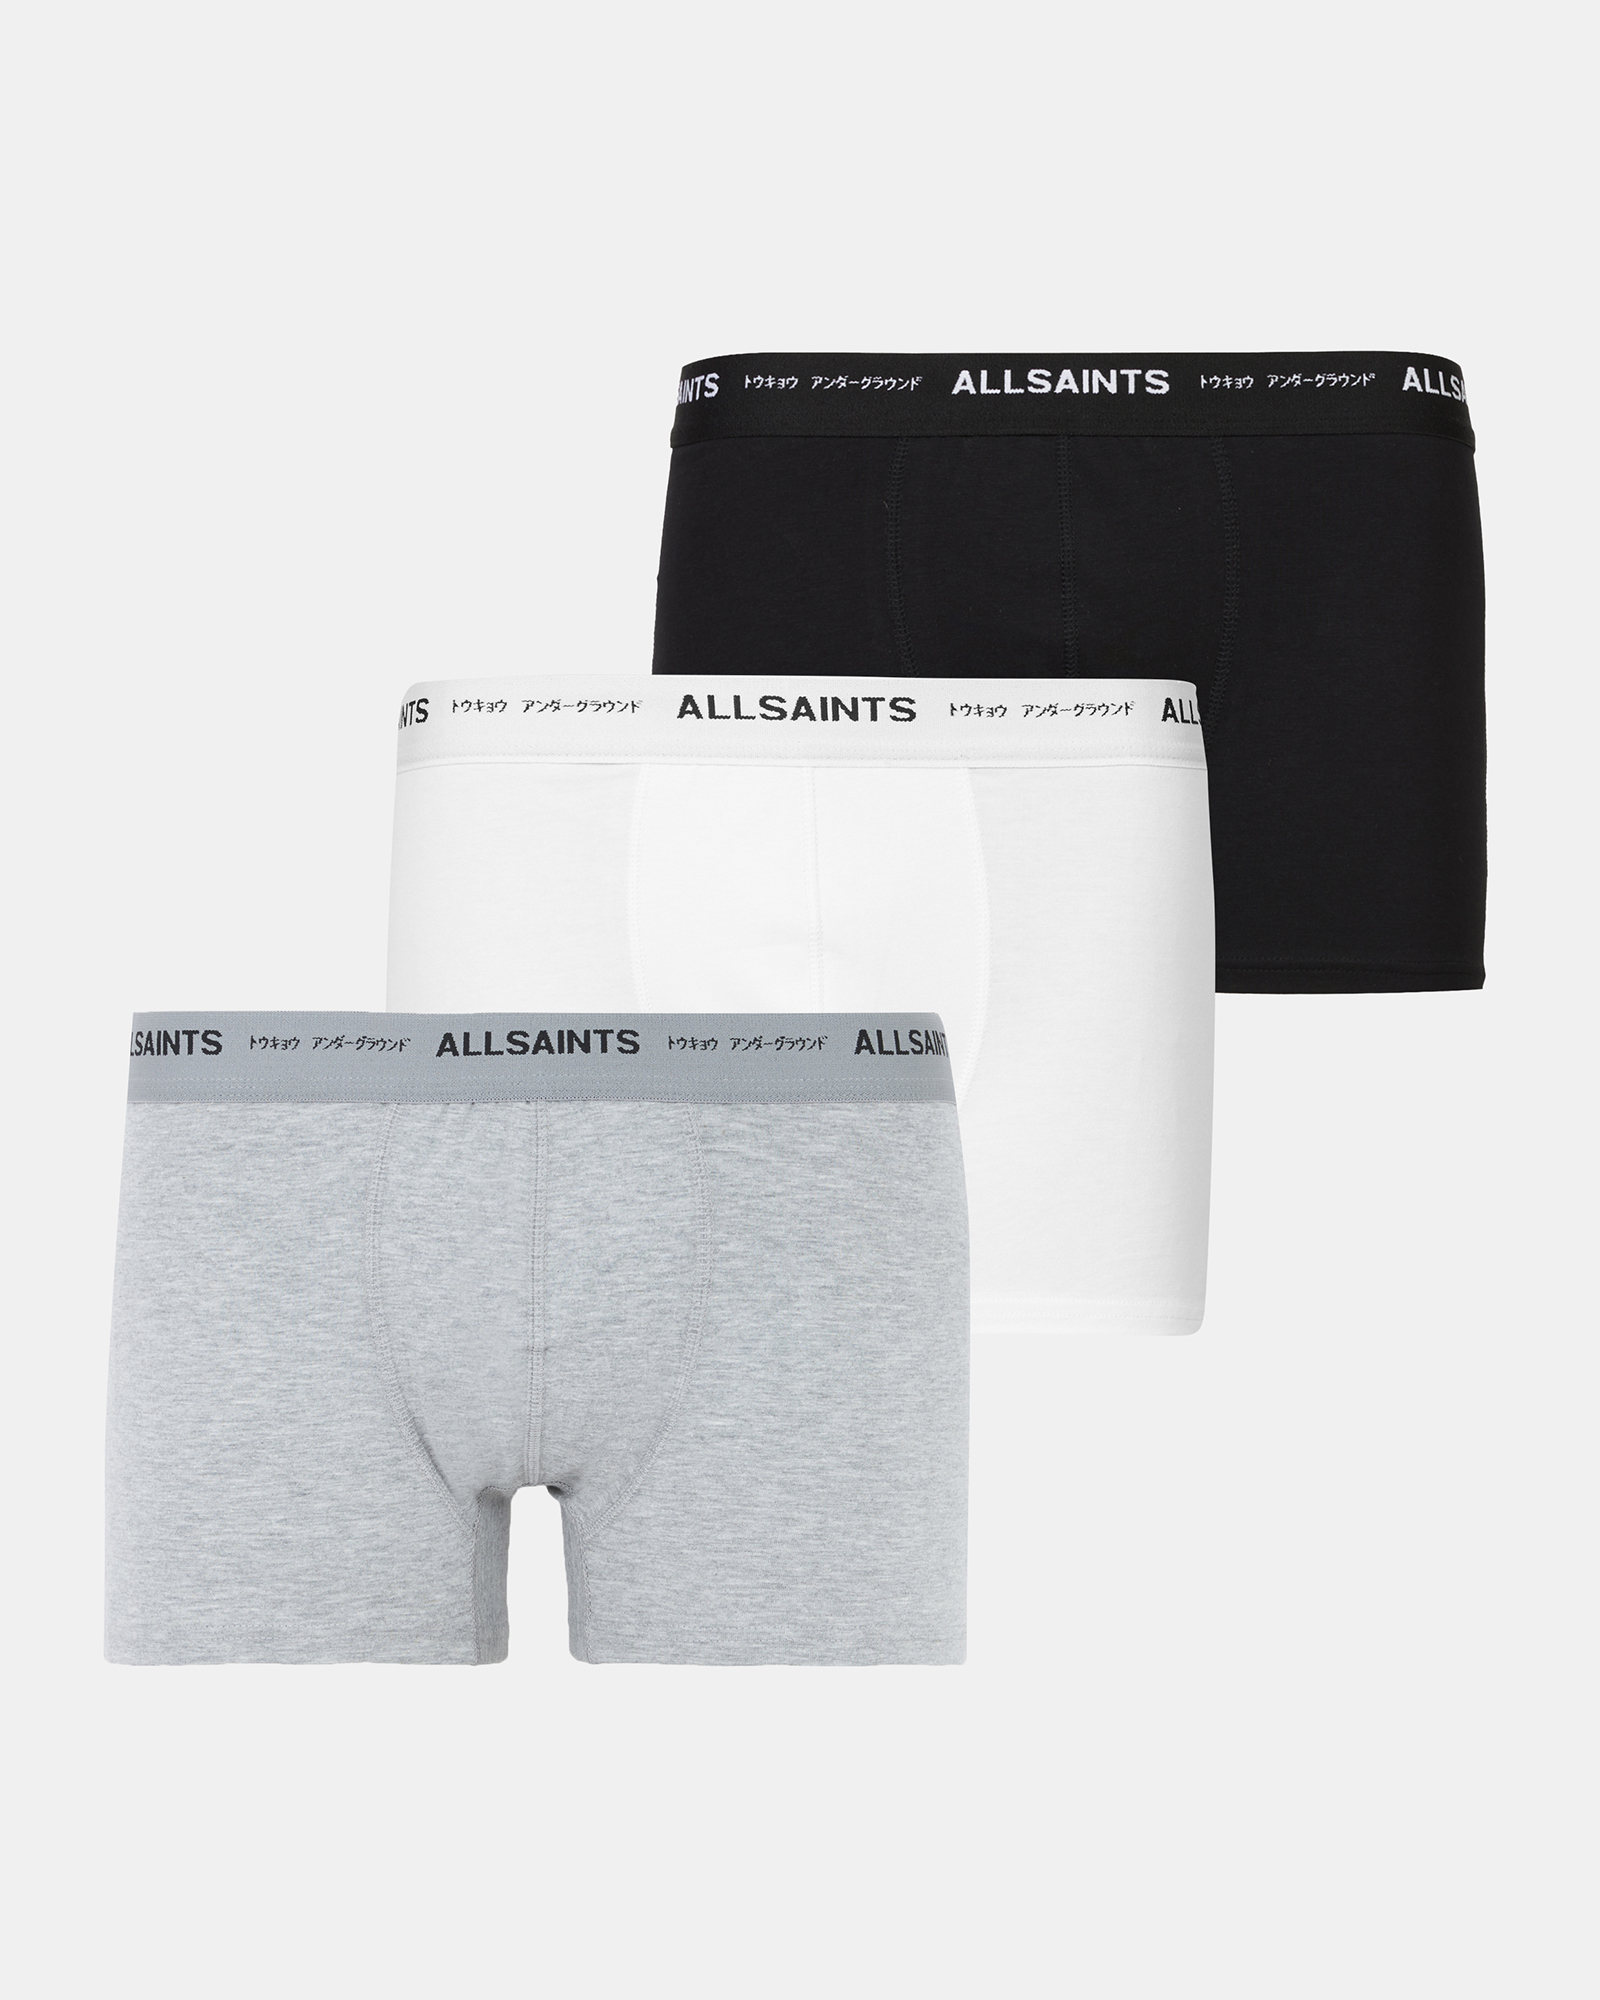 Undergram  Men's Underwear Boxer Briefs – UNDERGRAM